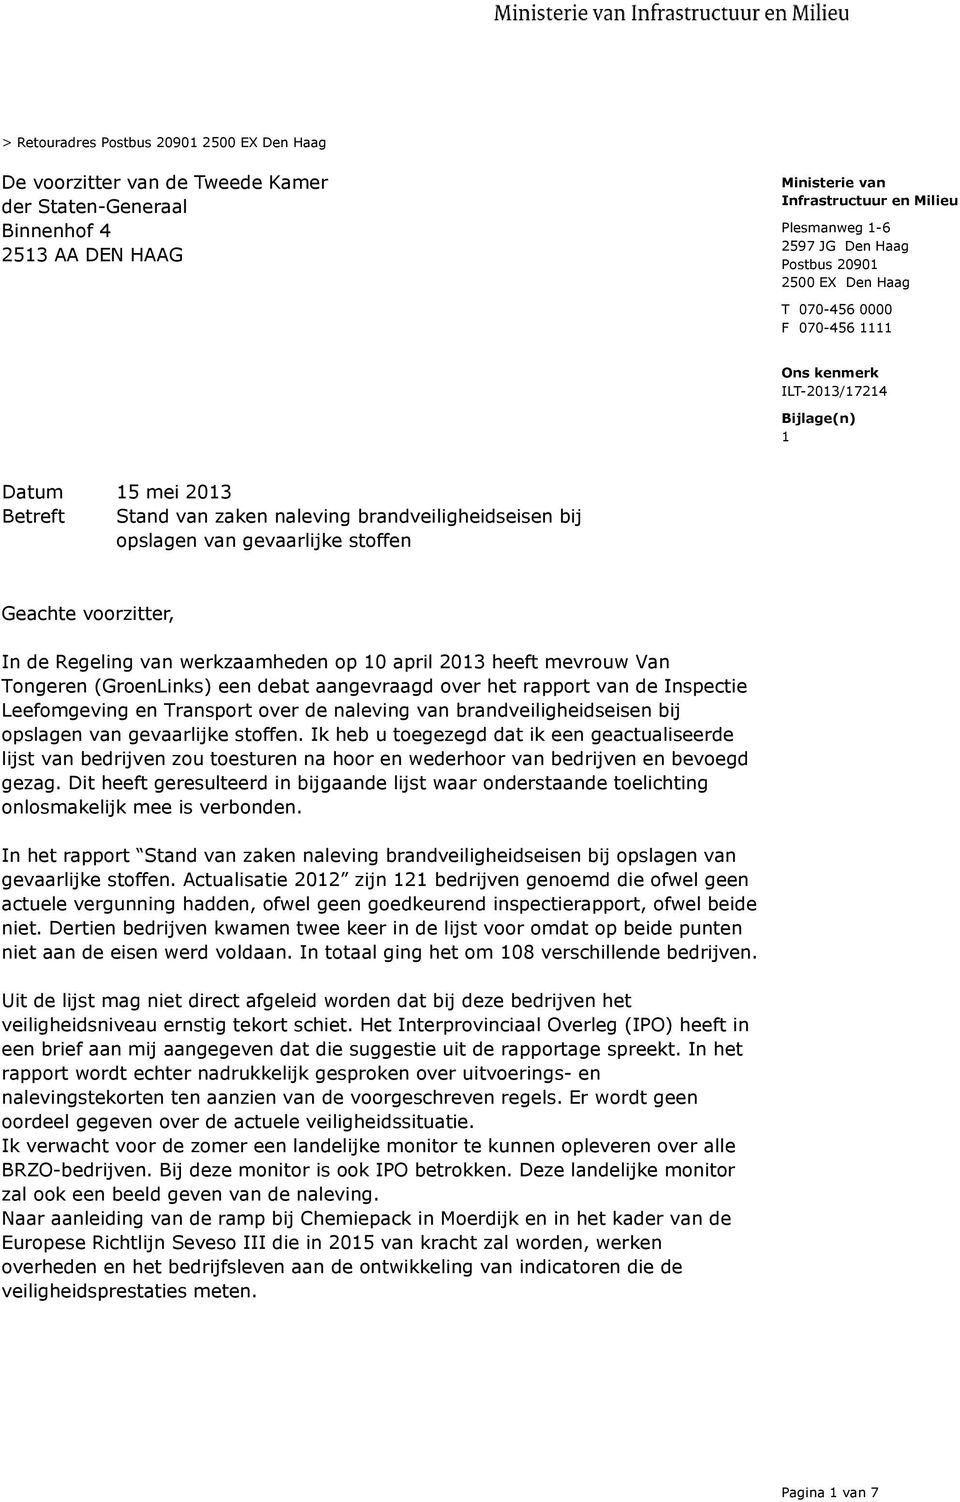 werkzaamheden op 10 april 2013 heeft mevrouw Van Tongeren (GroenLinks) een debat aangevraagd over het rapport van de Inspectie Leefomgeving en Transport over de naleving van brandveiligheidseisen bij